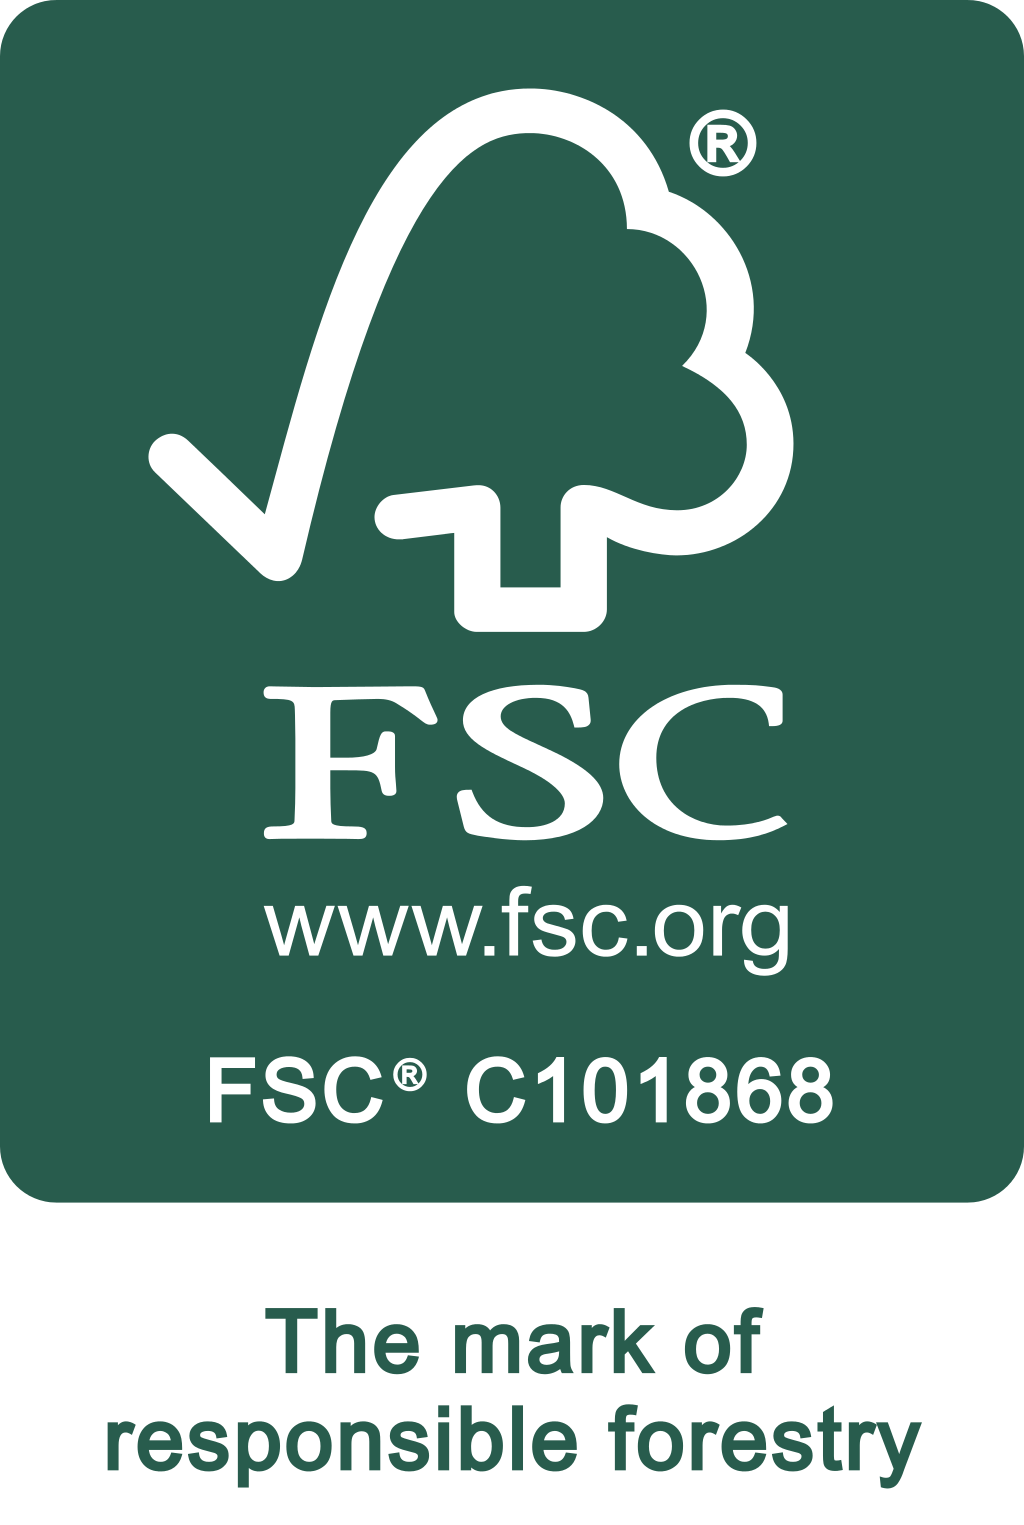 Visit FSC's website